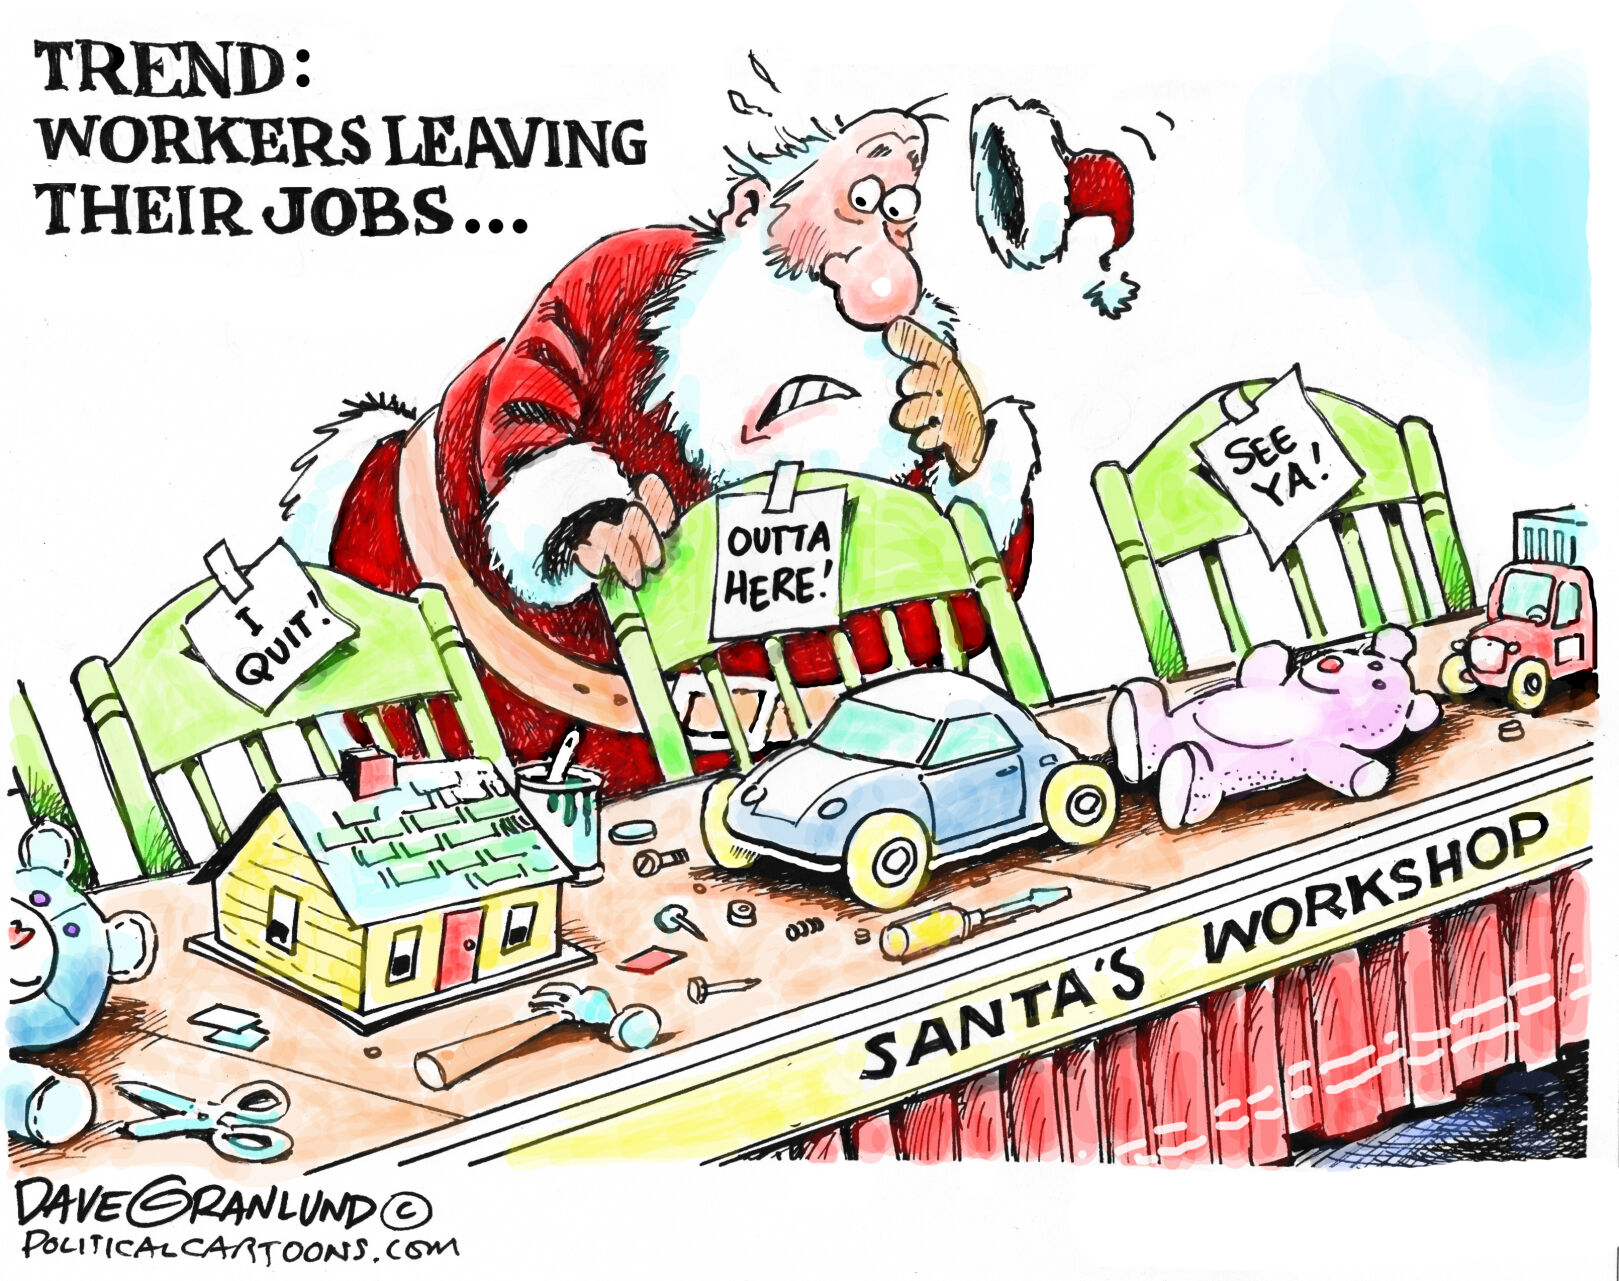 Its Too Early Santa Cartoon